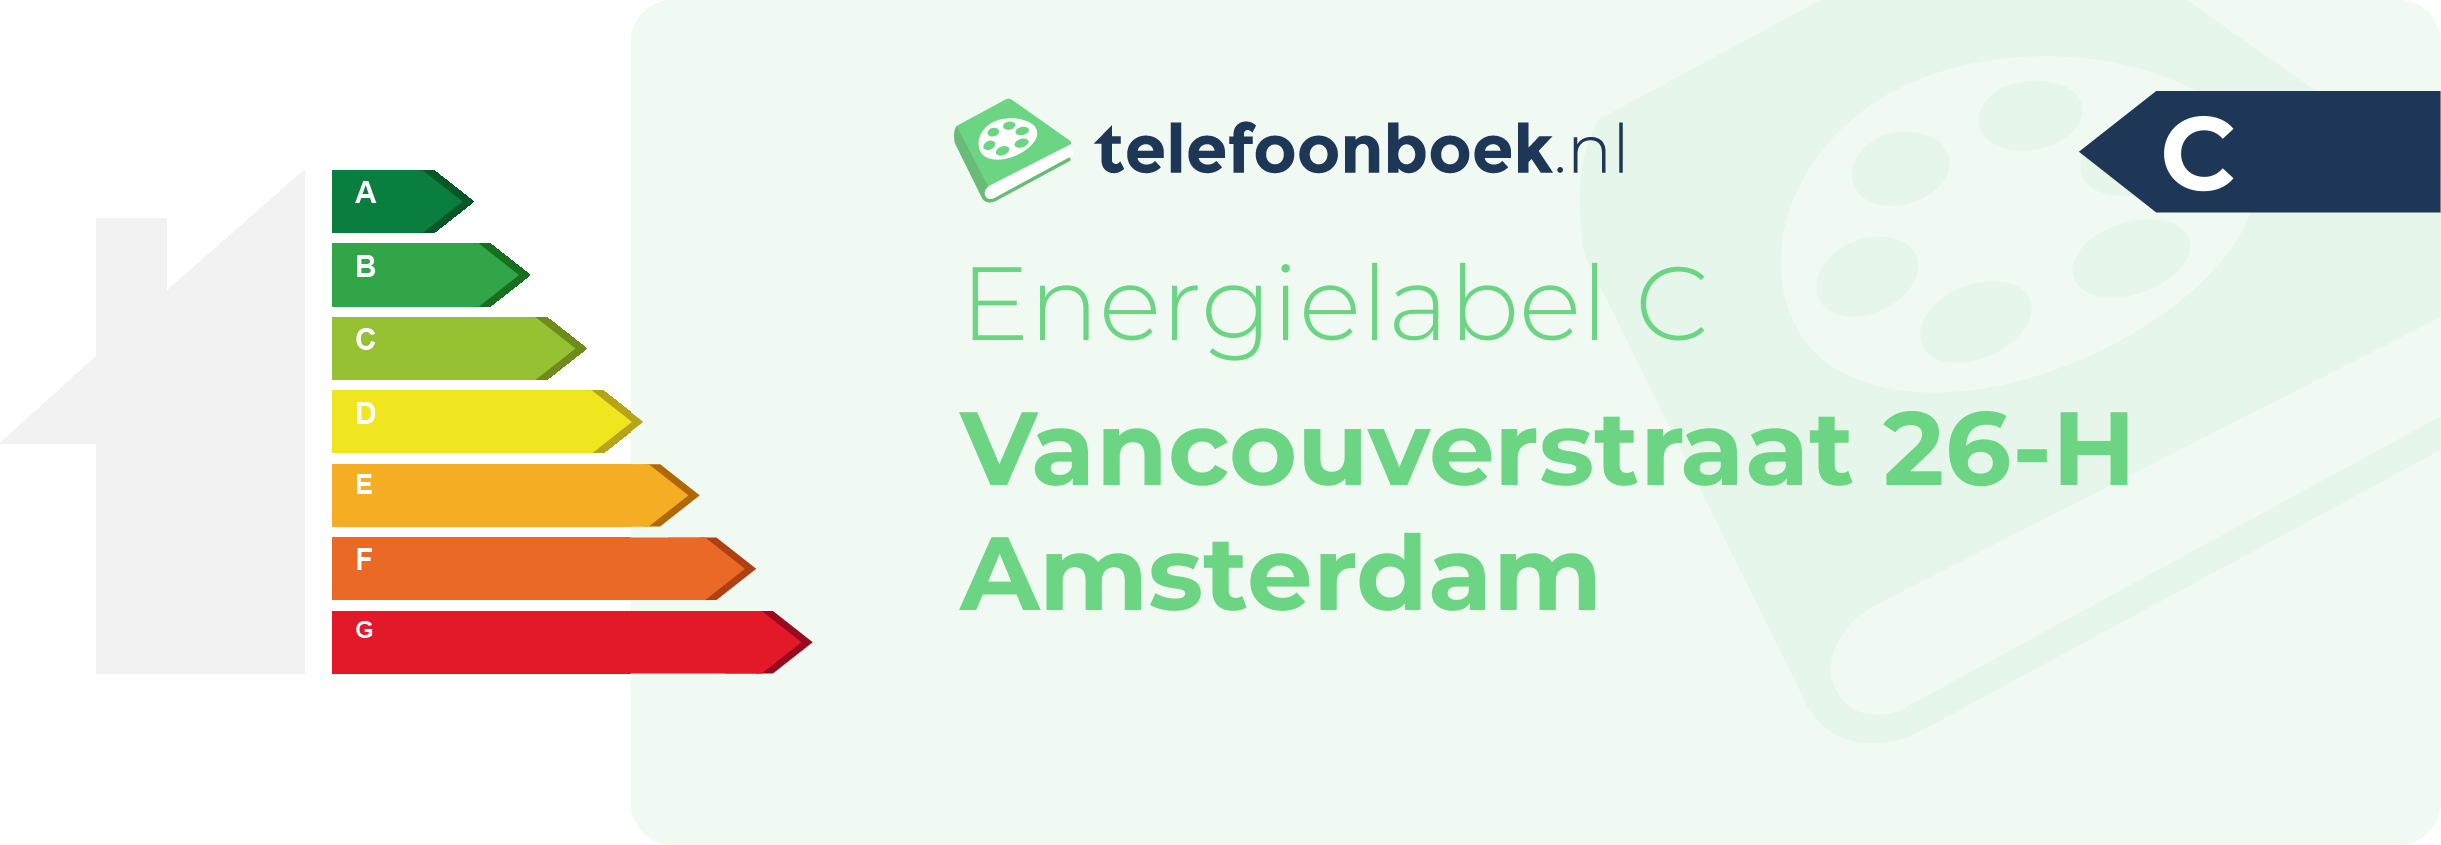 Energielabel Vancouverstraat 26-H Amsterdam